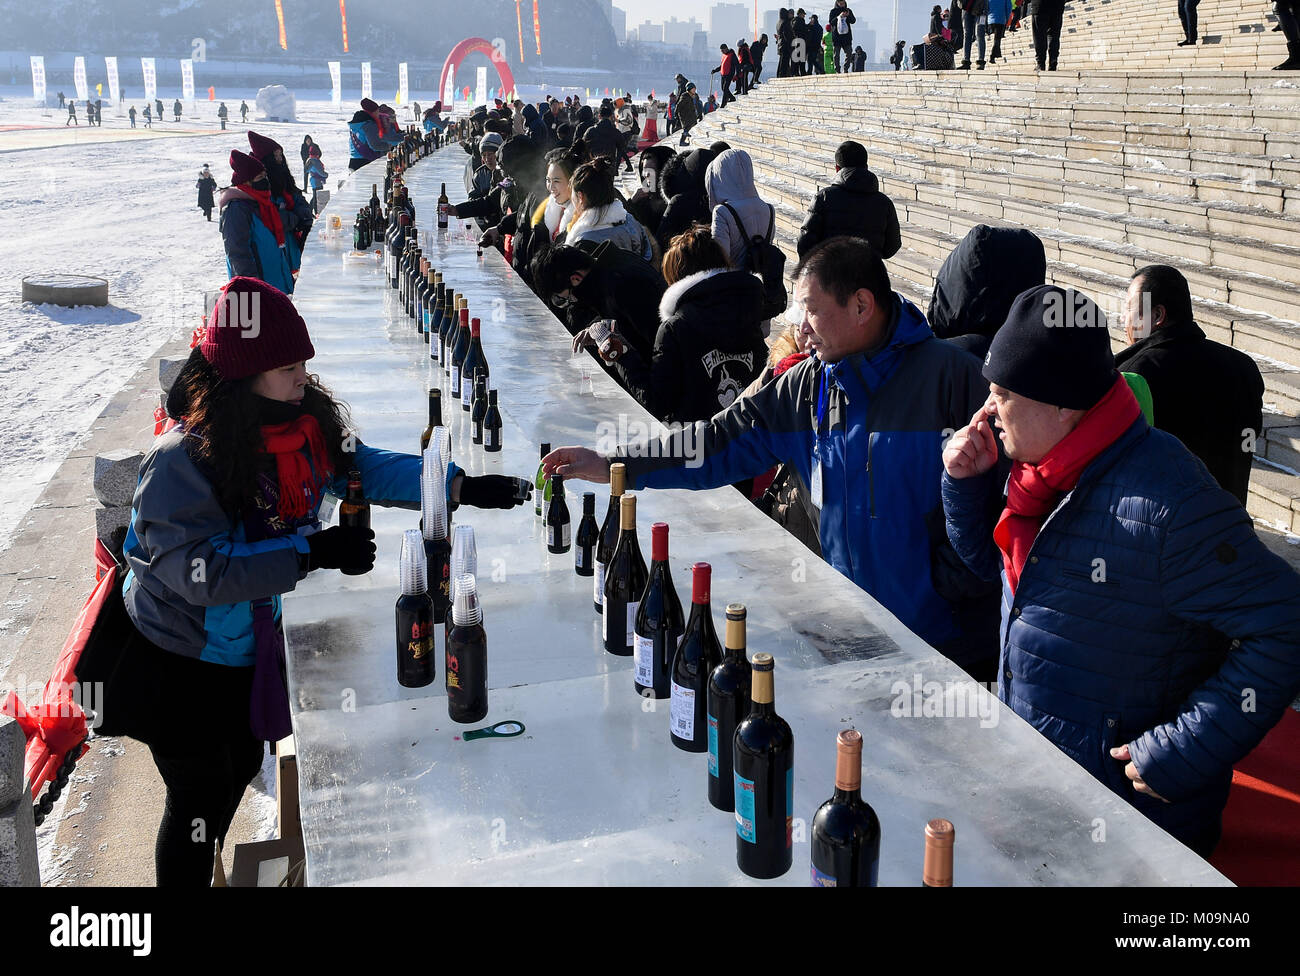 Tonghua, la Cina della provincia di Jilin. Xx gen, 2018. Cittadini degustare vino davanti a un bar di ghiaccio tabella presso la banca di fiume Hunjiang in Tonghua, a nord-est della Cina di provincia di Jilin, 20 gennaio, 2018. Un 2221.7 metri quadri con immagini di neve e un 100.6-metro-ghiaccio lungo tavolo bar erano visti di recente nella città. Credito: Xu Chang/Xinhua/Alamy Live News Foto Stock